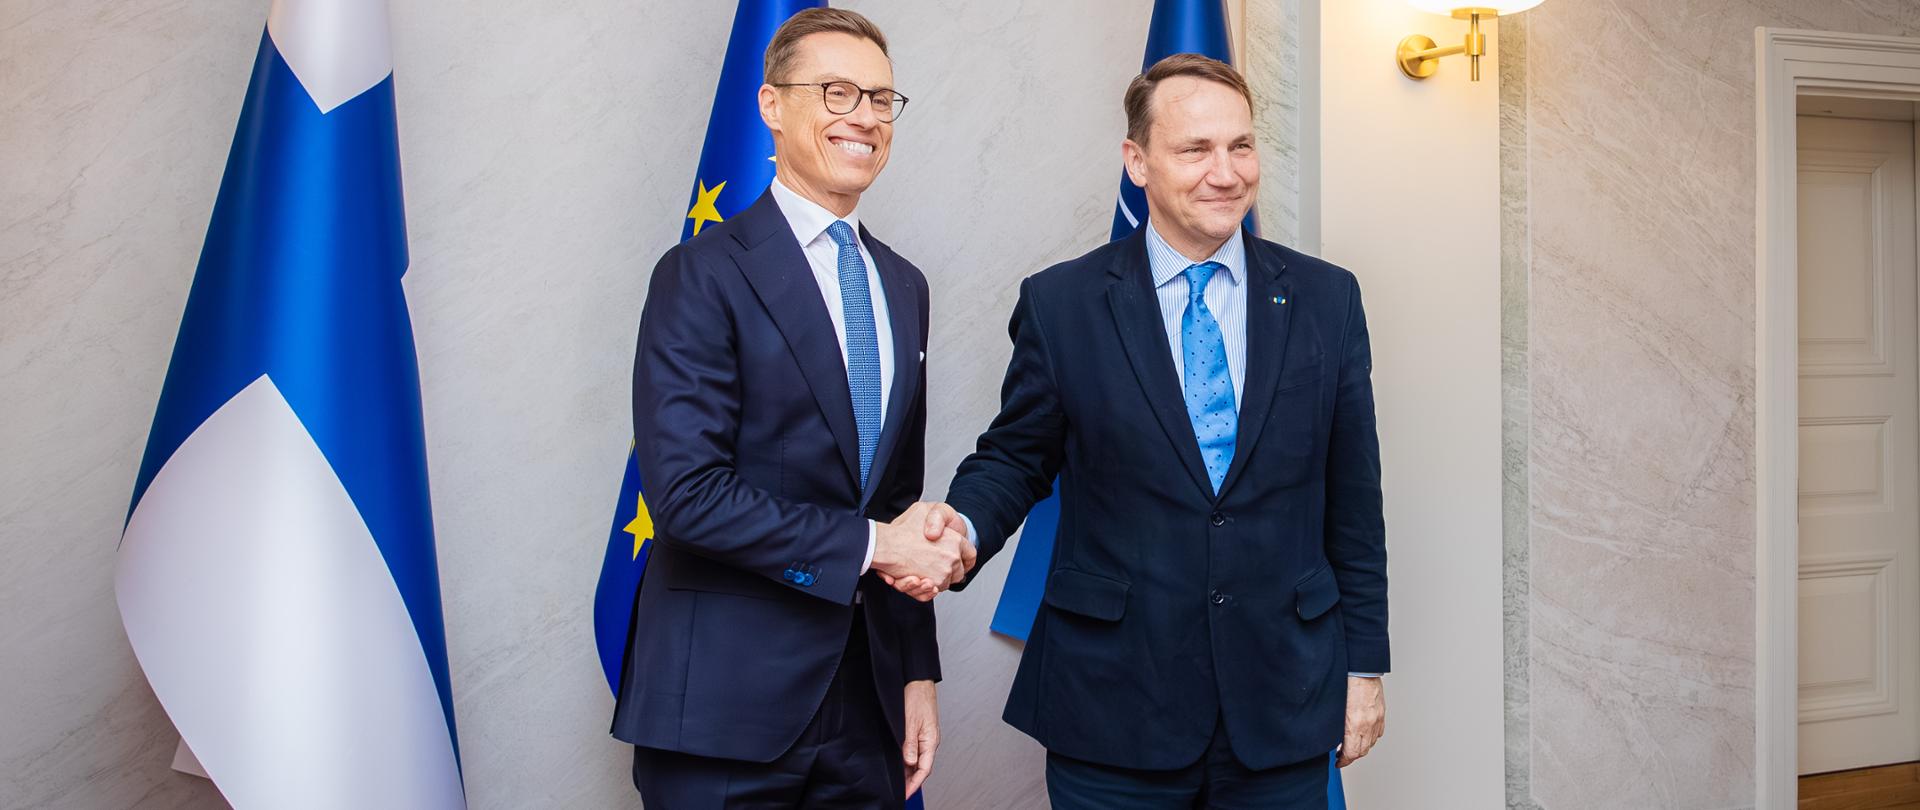 Podczas wizyty w Helsinkach szef polskiego MSZ spotkał się z prezydentem Finlandii Alexandrem Stubbem